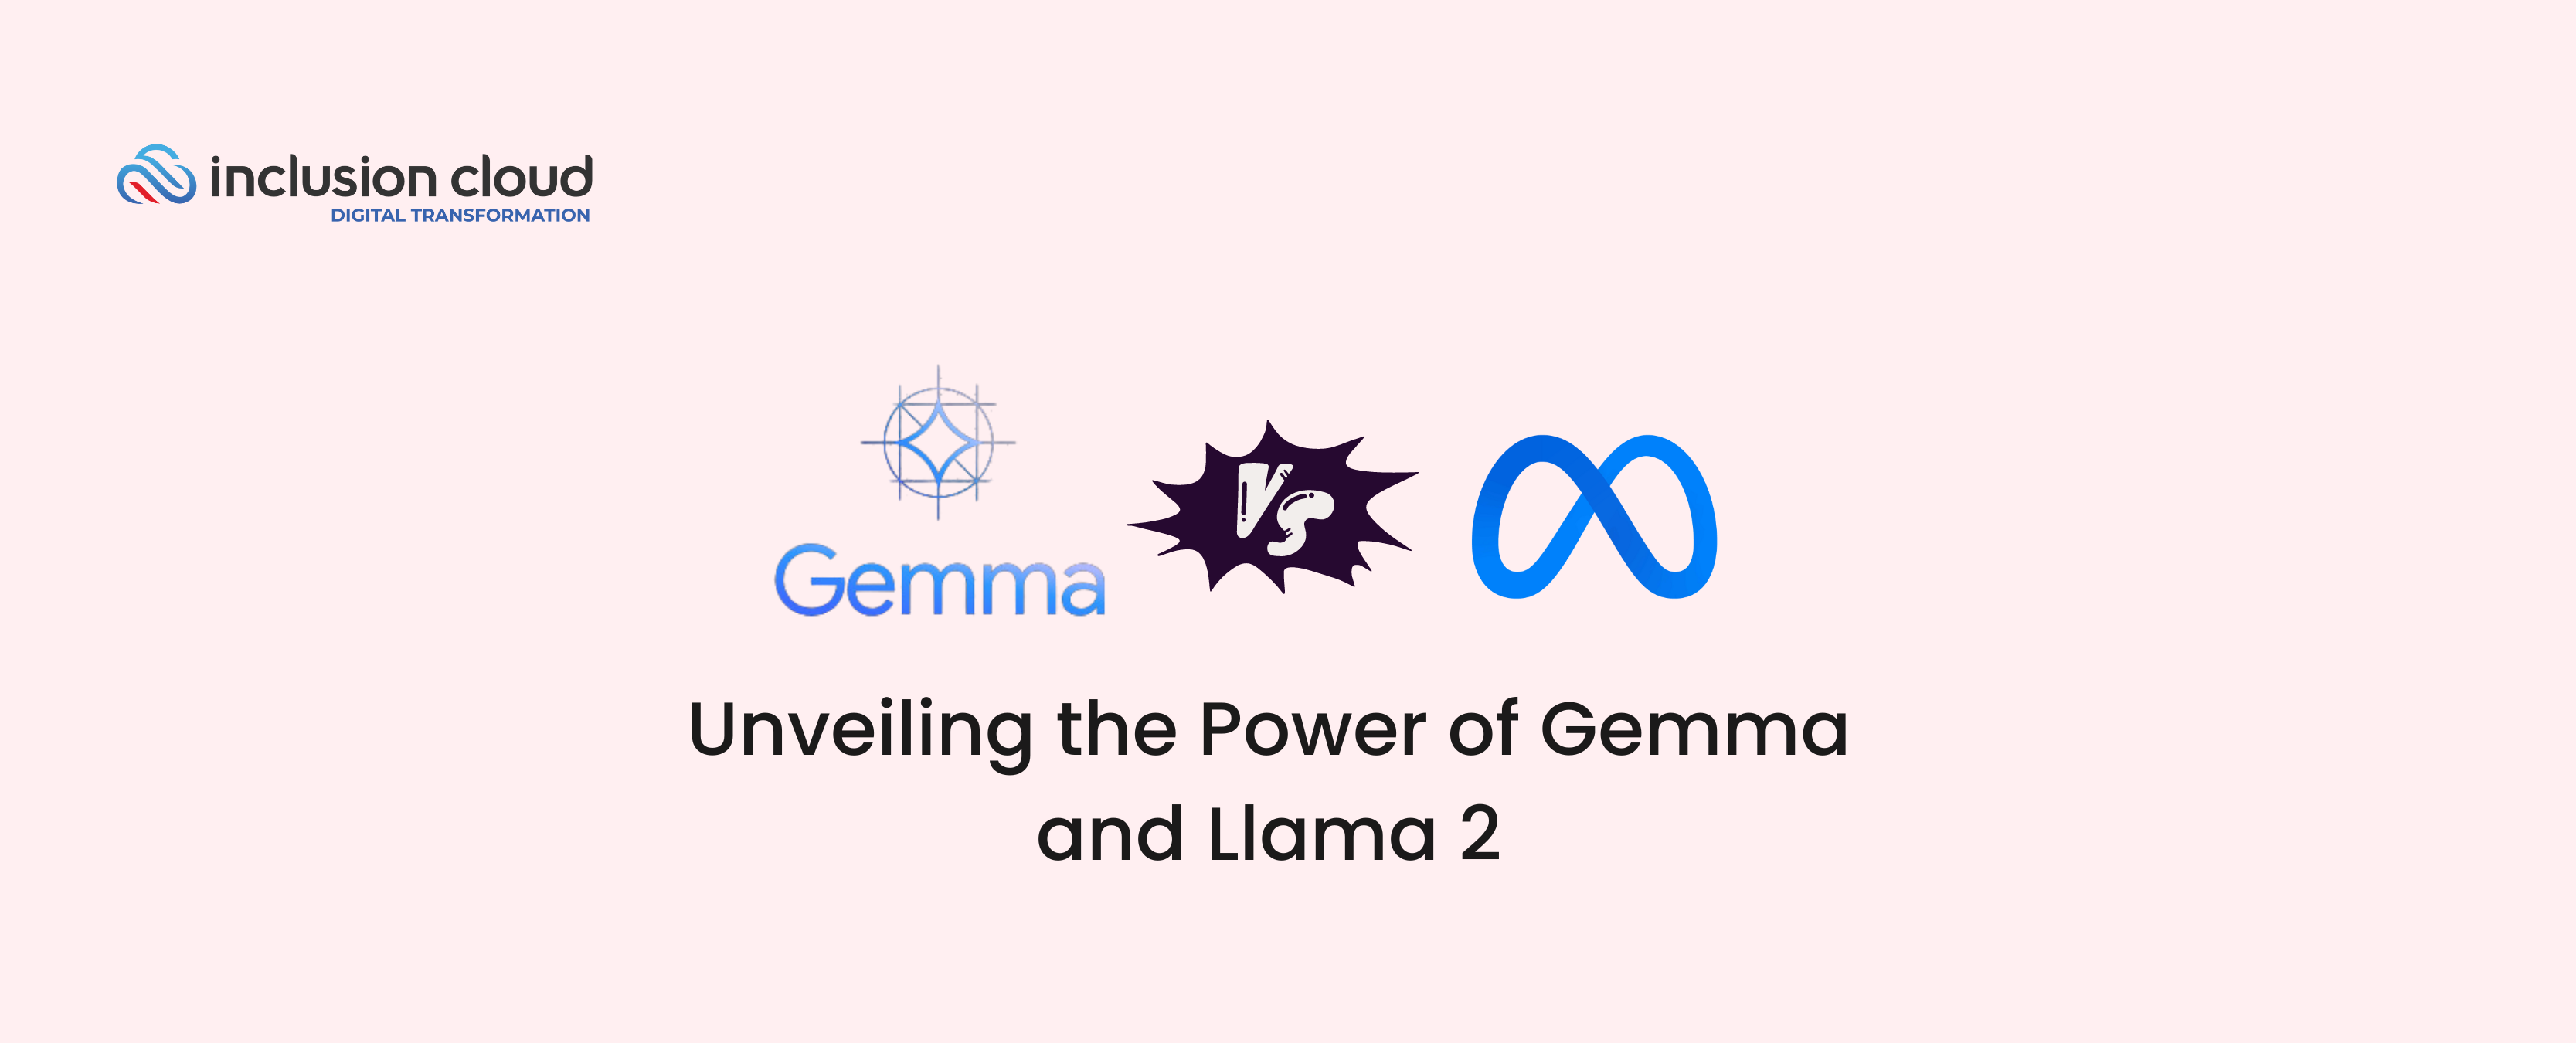 Gemma vs Llama 2